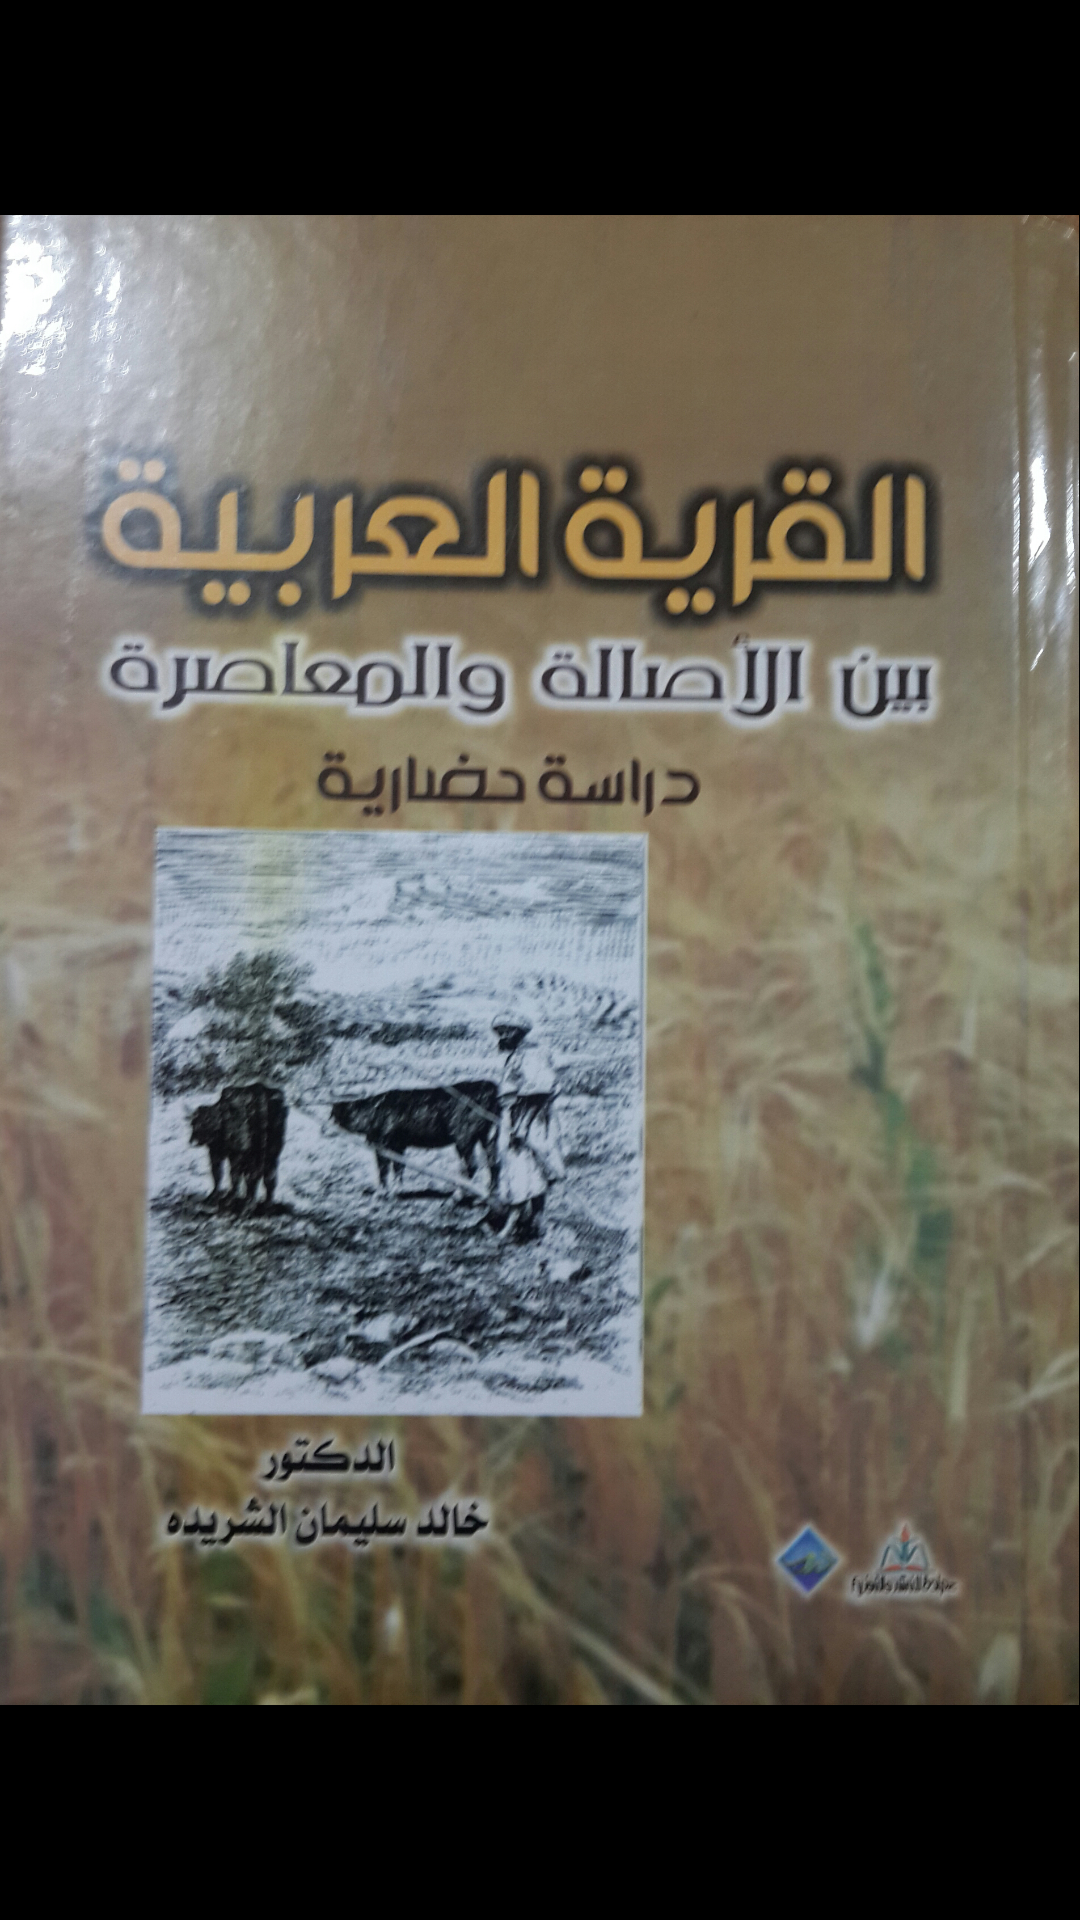 الدكتور خالد الشريدة مبارك إصدار كتاب"القرية العربية"